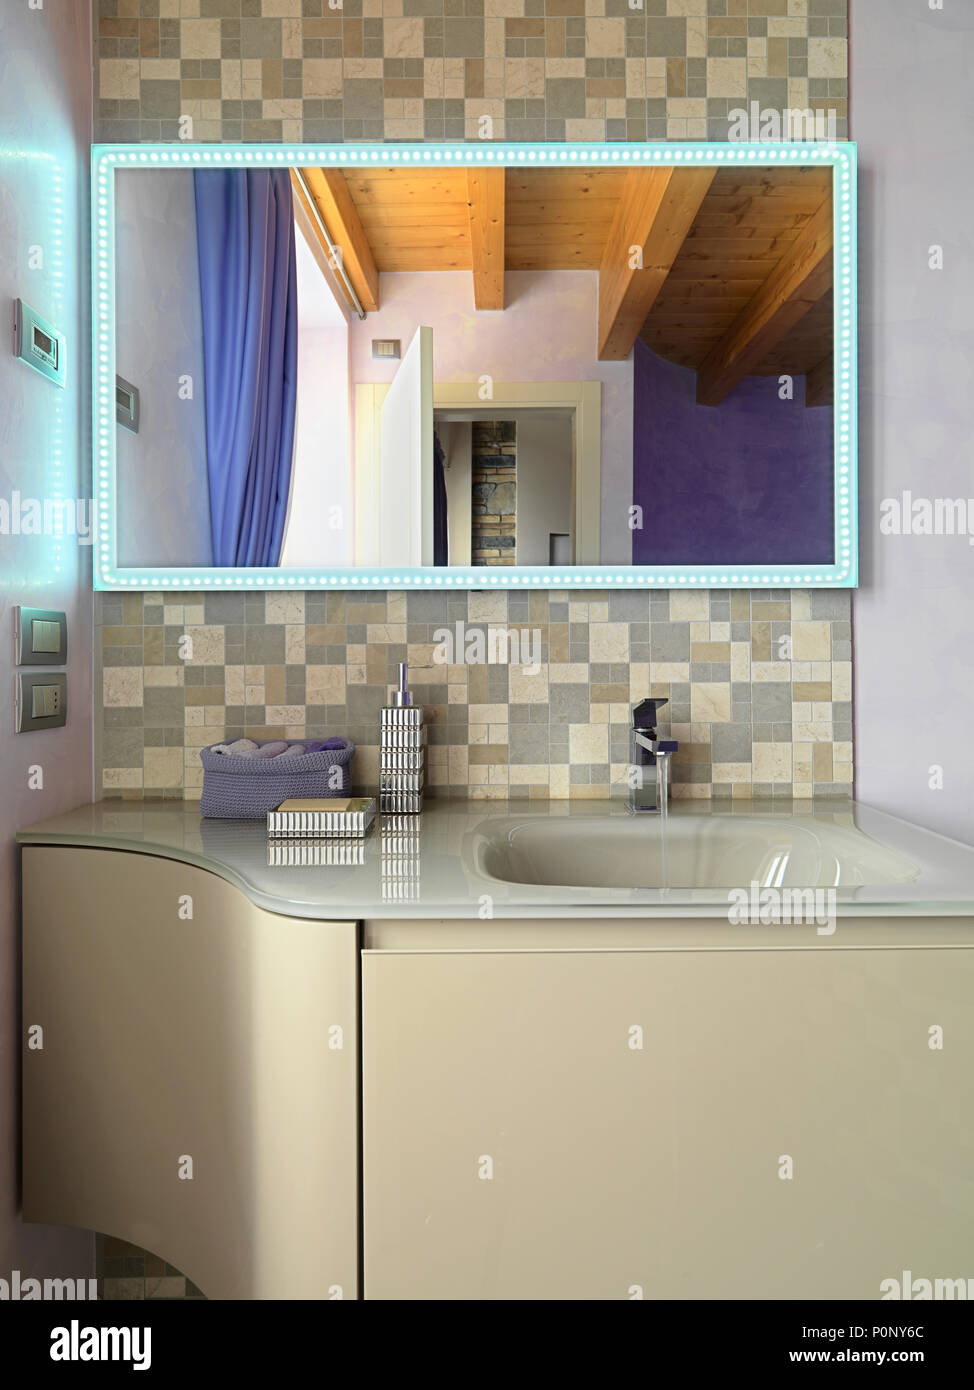 Bagno moderno interno in primo piano il lavandino Mobile lavandino integrato nel piano, specchio incorniciato di lampadine Foto Stock